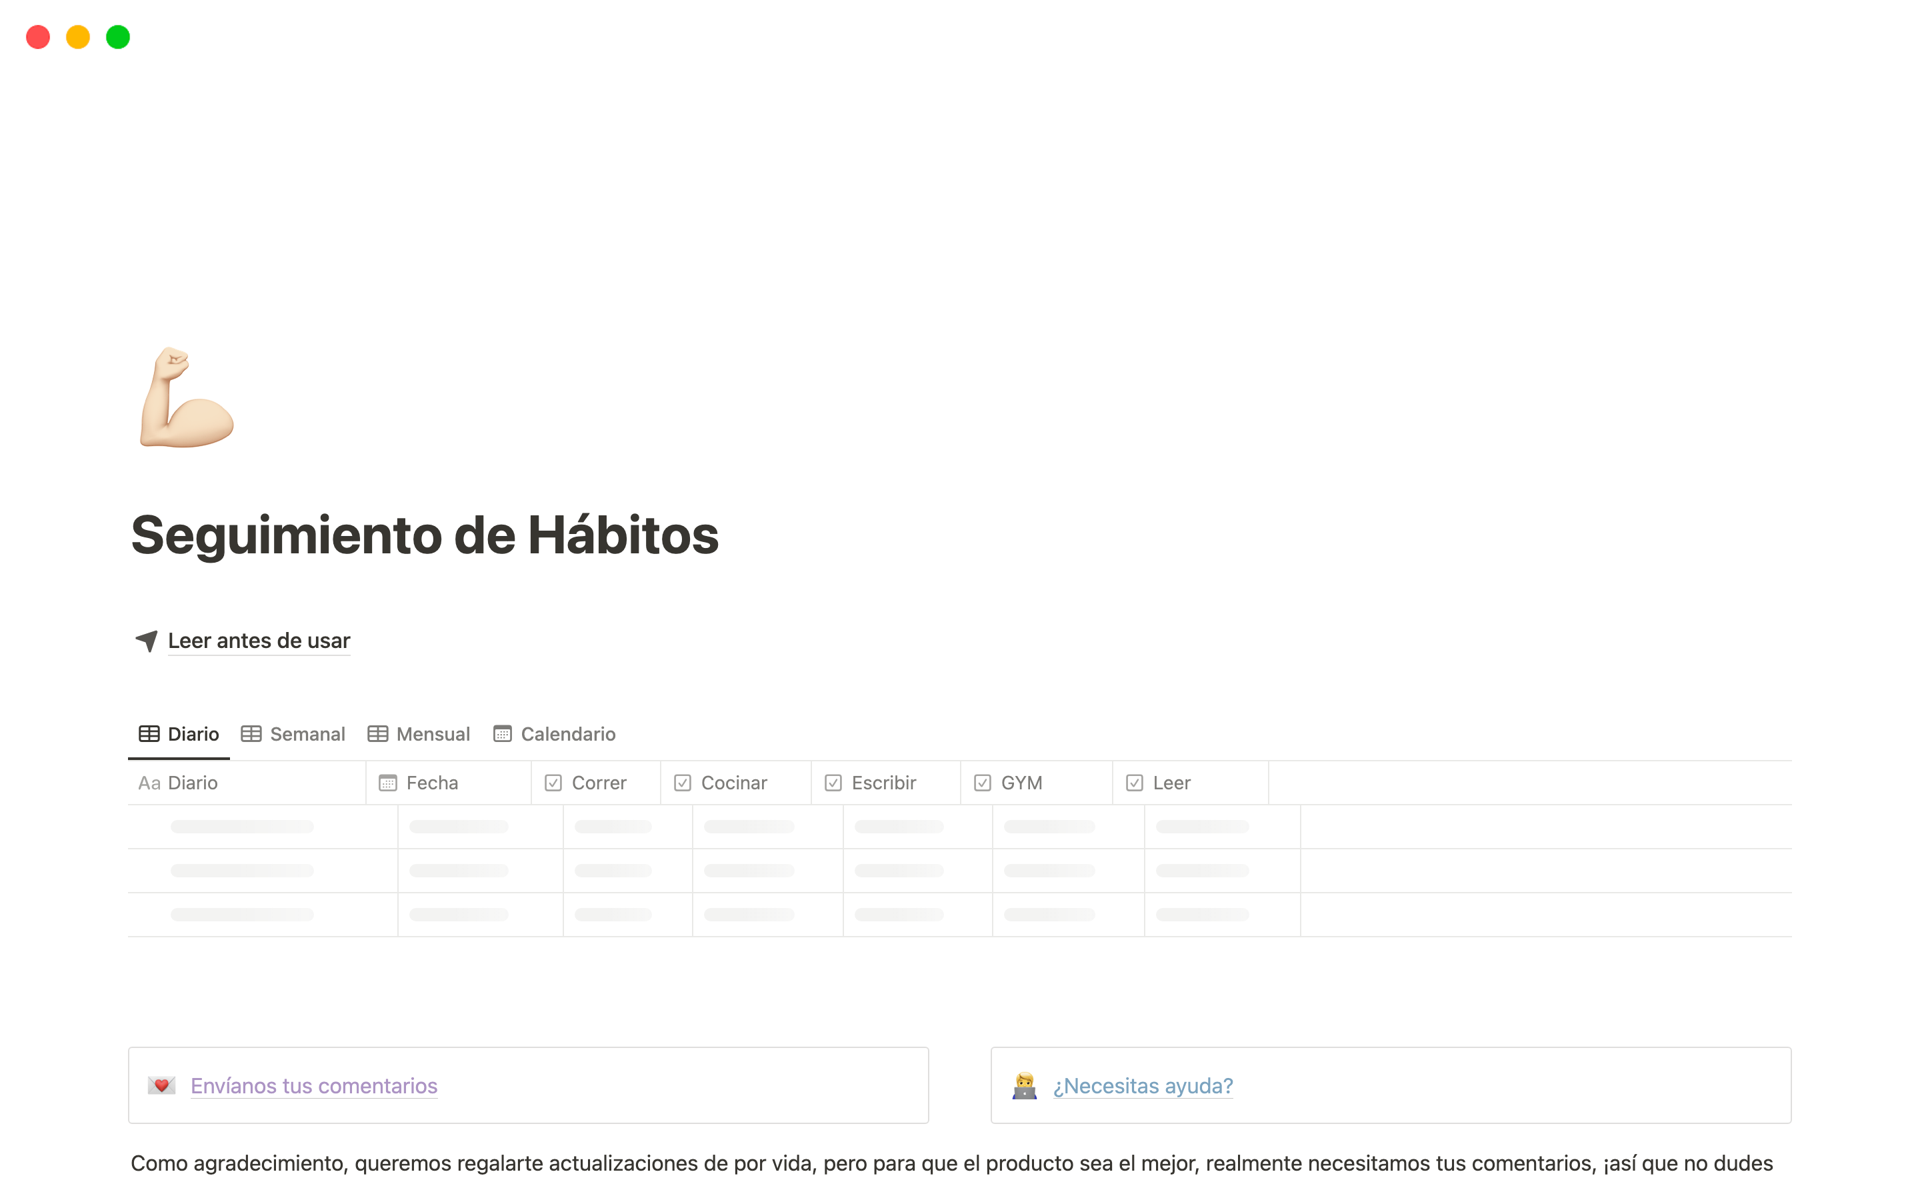 Transforma tus metas en hábitos duraderos con nuestro template de Notion en Español.